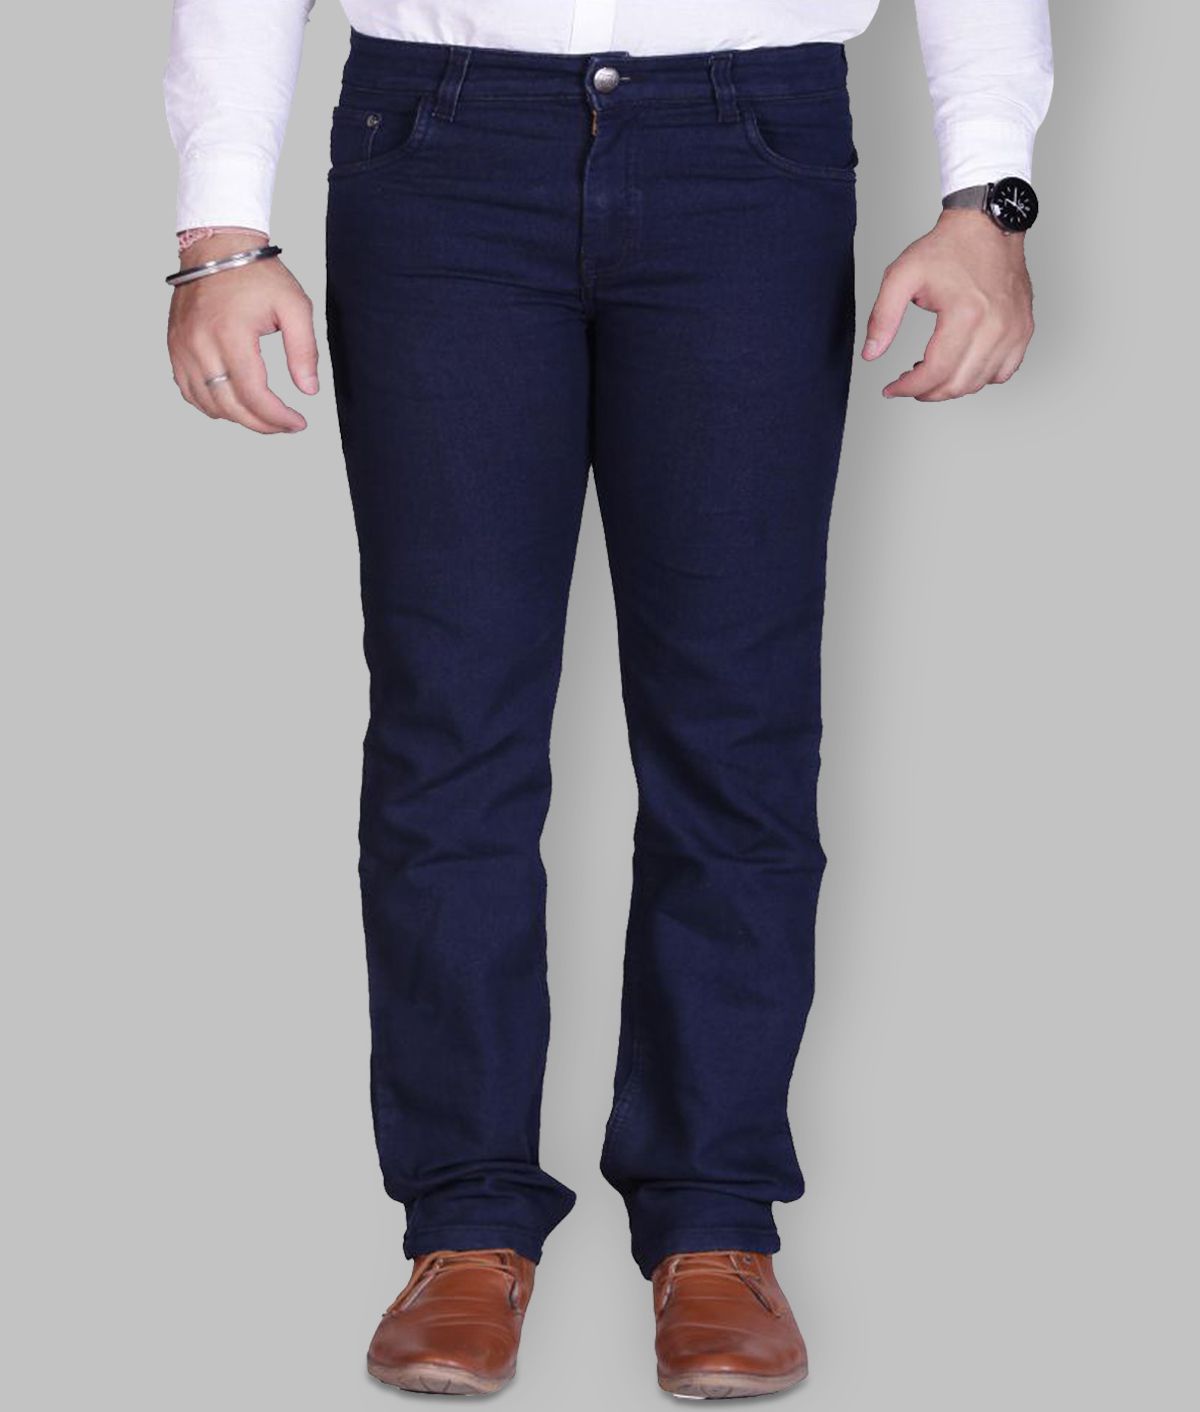 PRANKSTER - Navy Blue 100% Cotton Regular Fit Men's Jeans ( Pack of 1 )